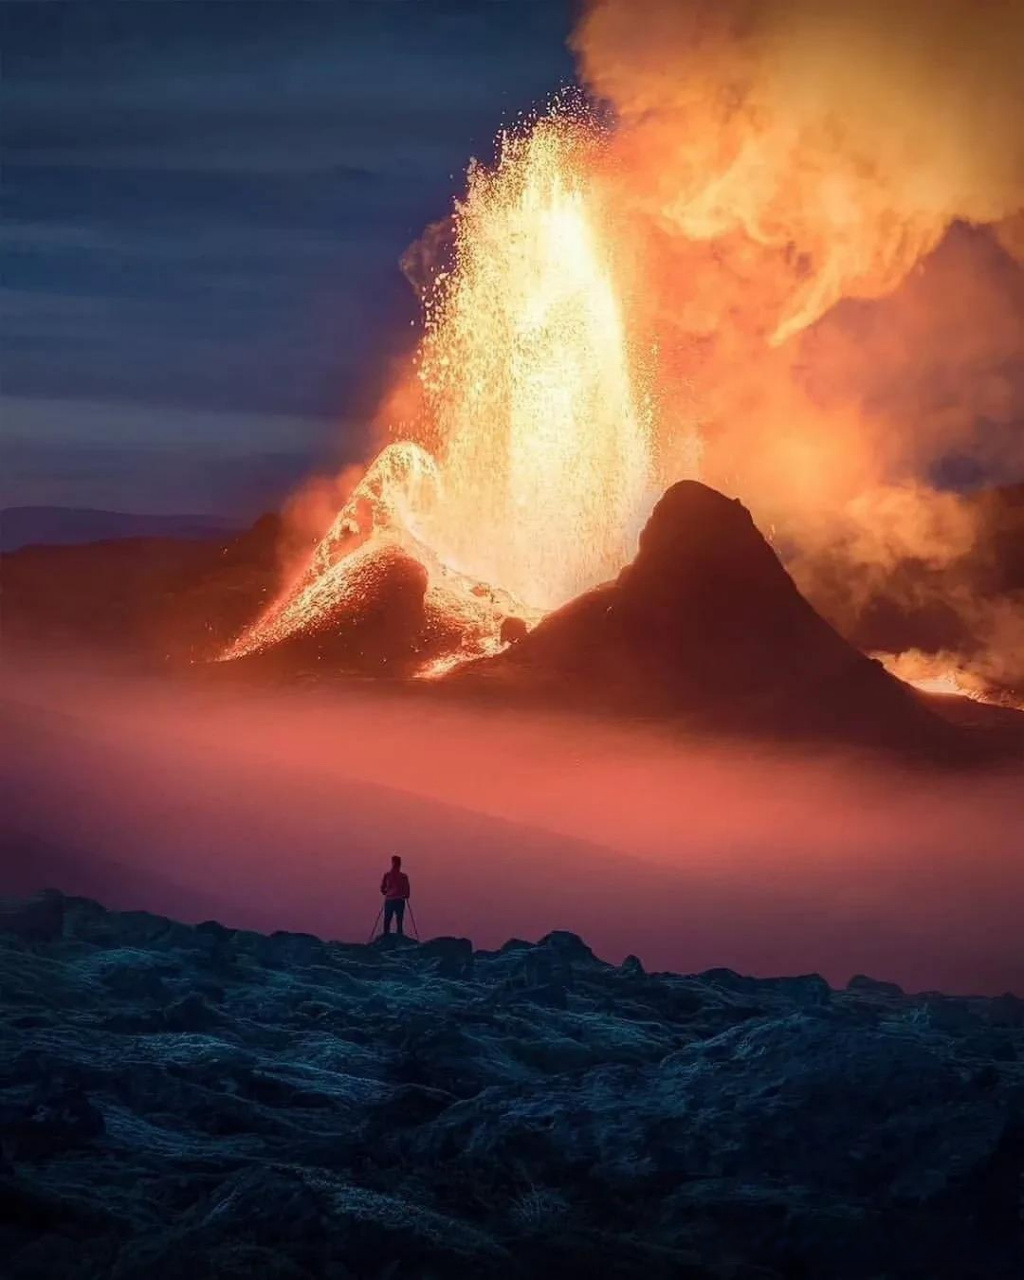 冰岛火山喷发场面!无比震撼!  场面非常地壮观,听说还有人在附近摄影!